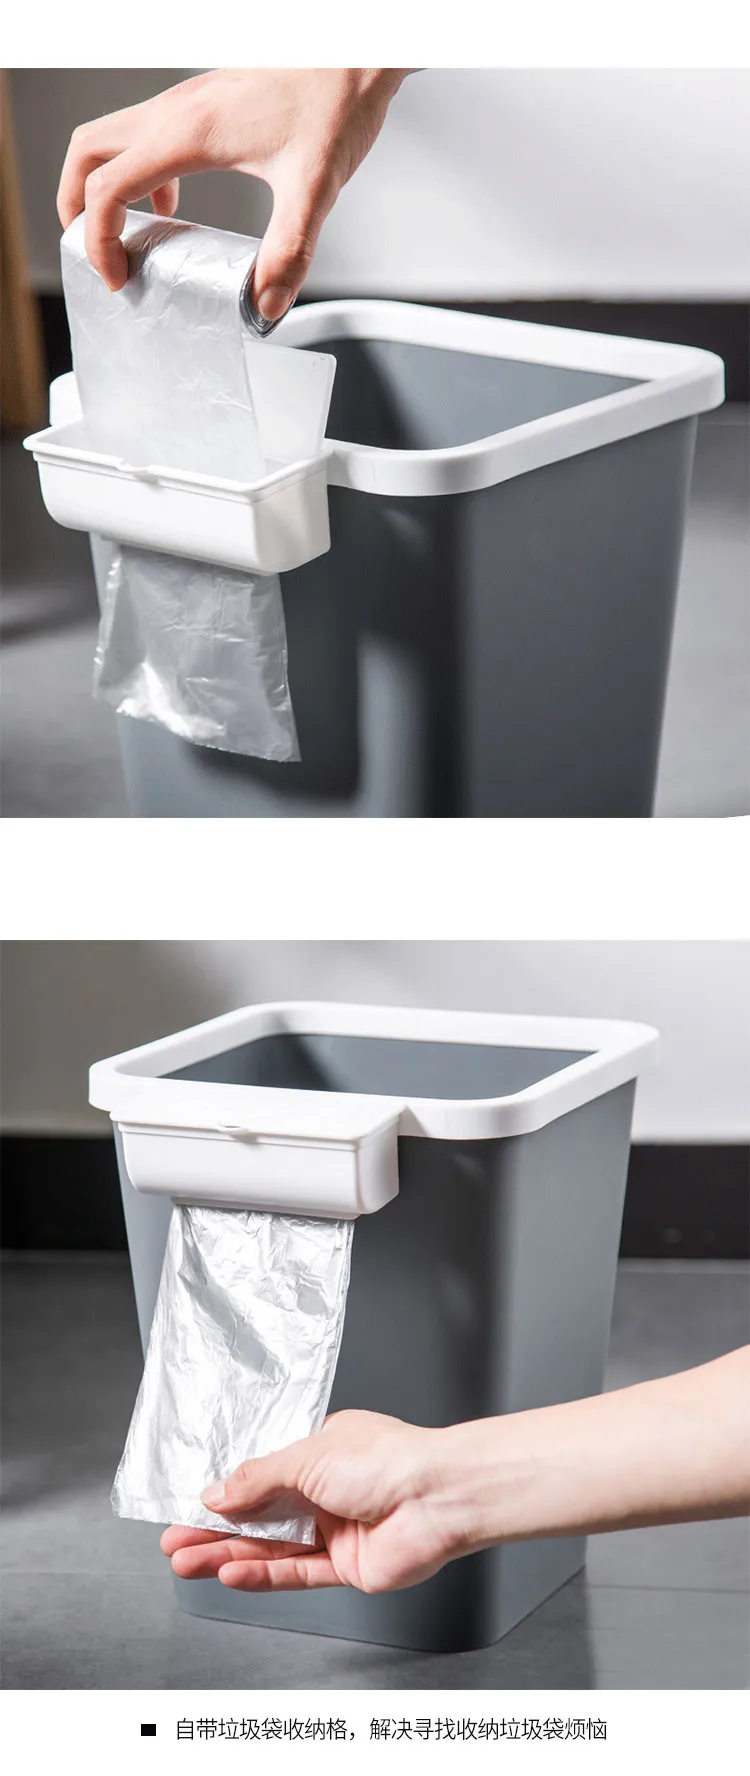 Отправить больше полуавтоматическая сумка для переодевания мусорная банка бытовой большой размер гостиная ванная комната Спальня Кухня японский стиль Creat